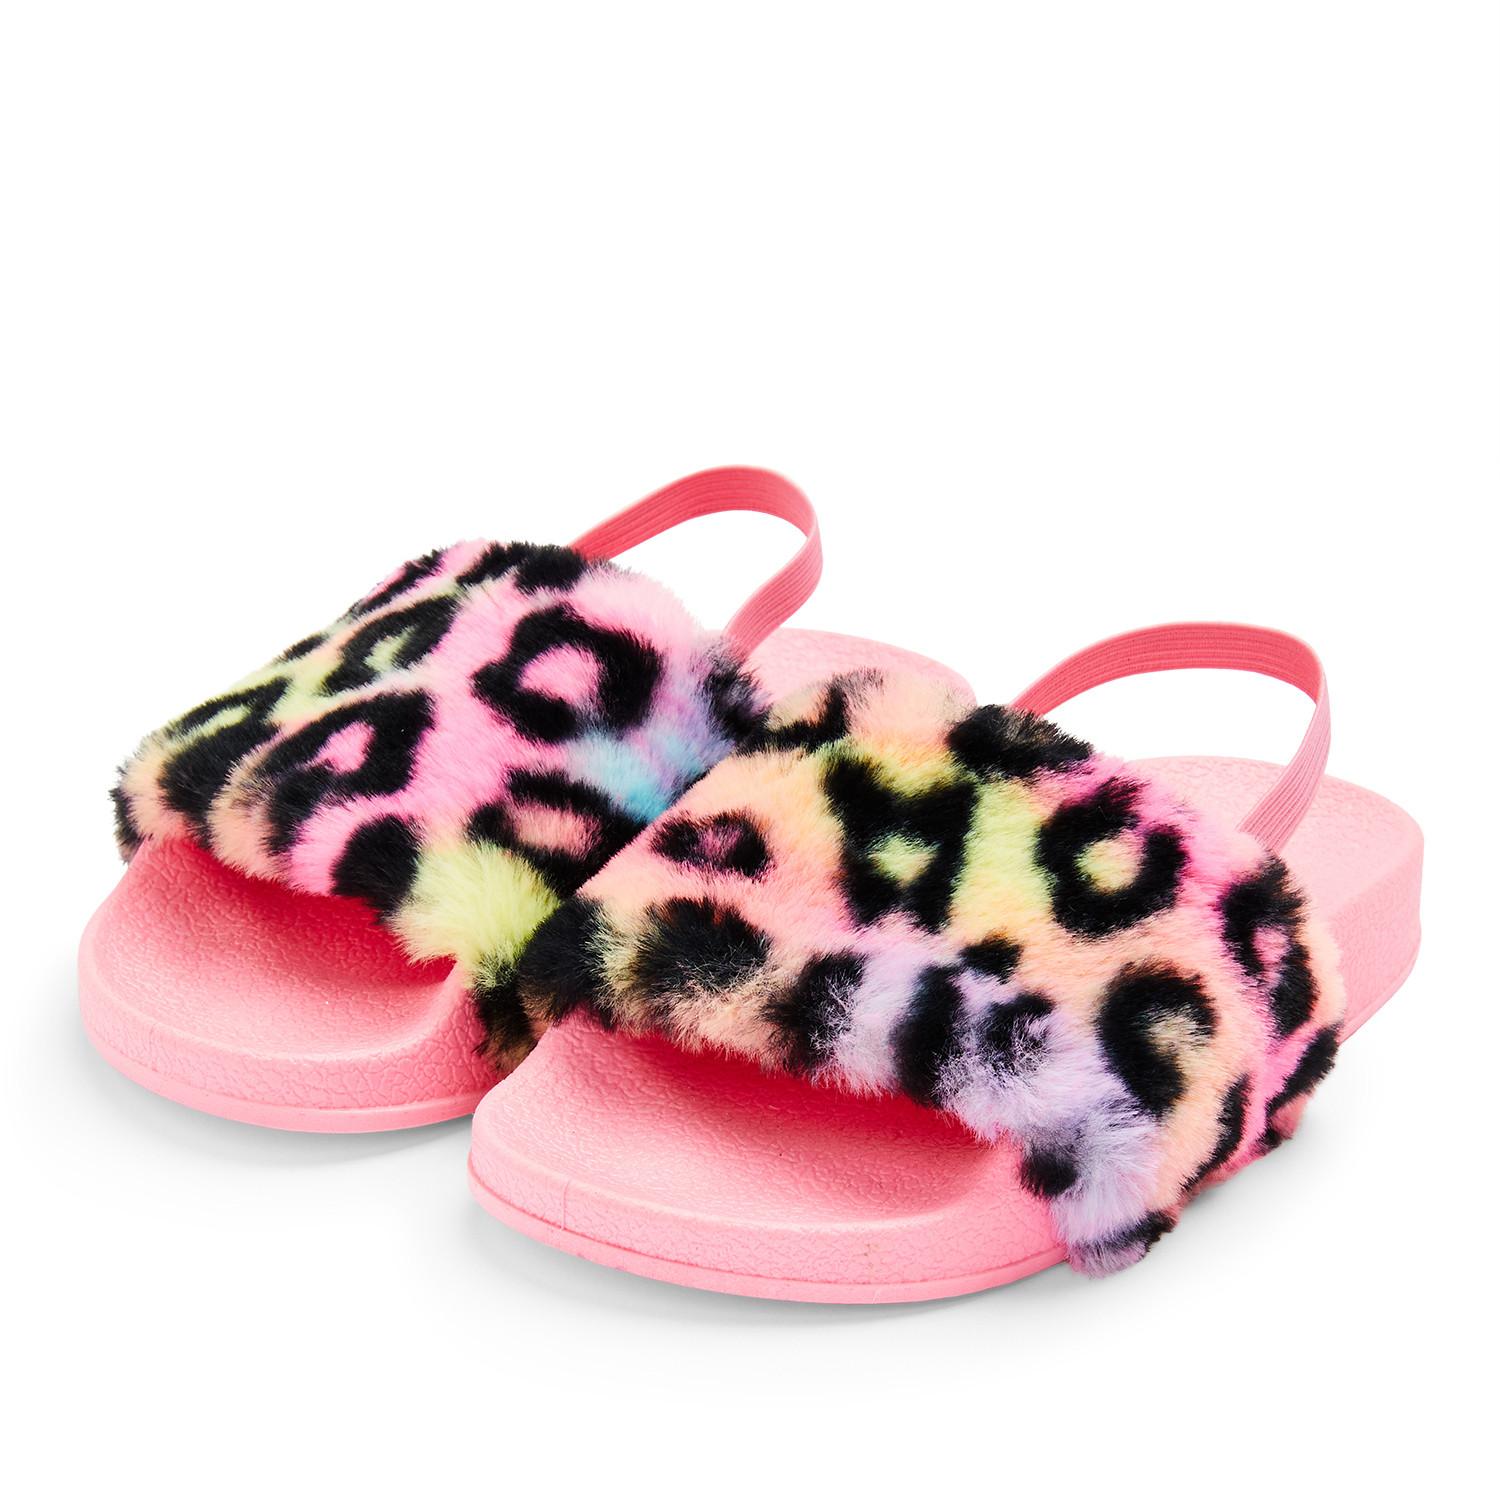 de pelo sintético rosa y estampado de leopardo para niña pequeña | Zapatos para niña | Moda para niñas | Ropa niños | Todos los productos Primark | España